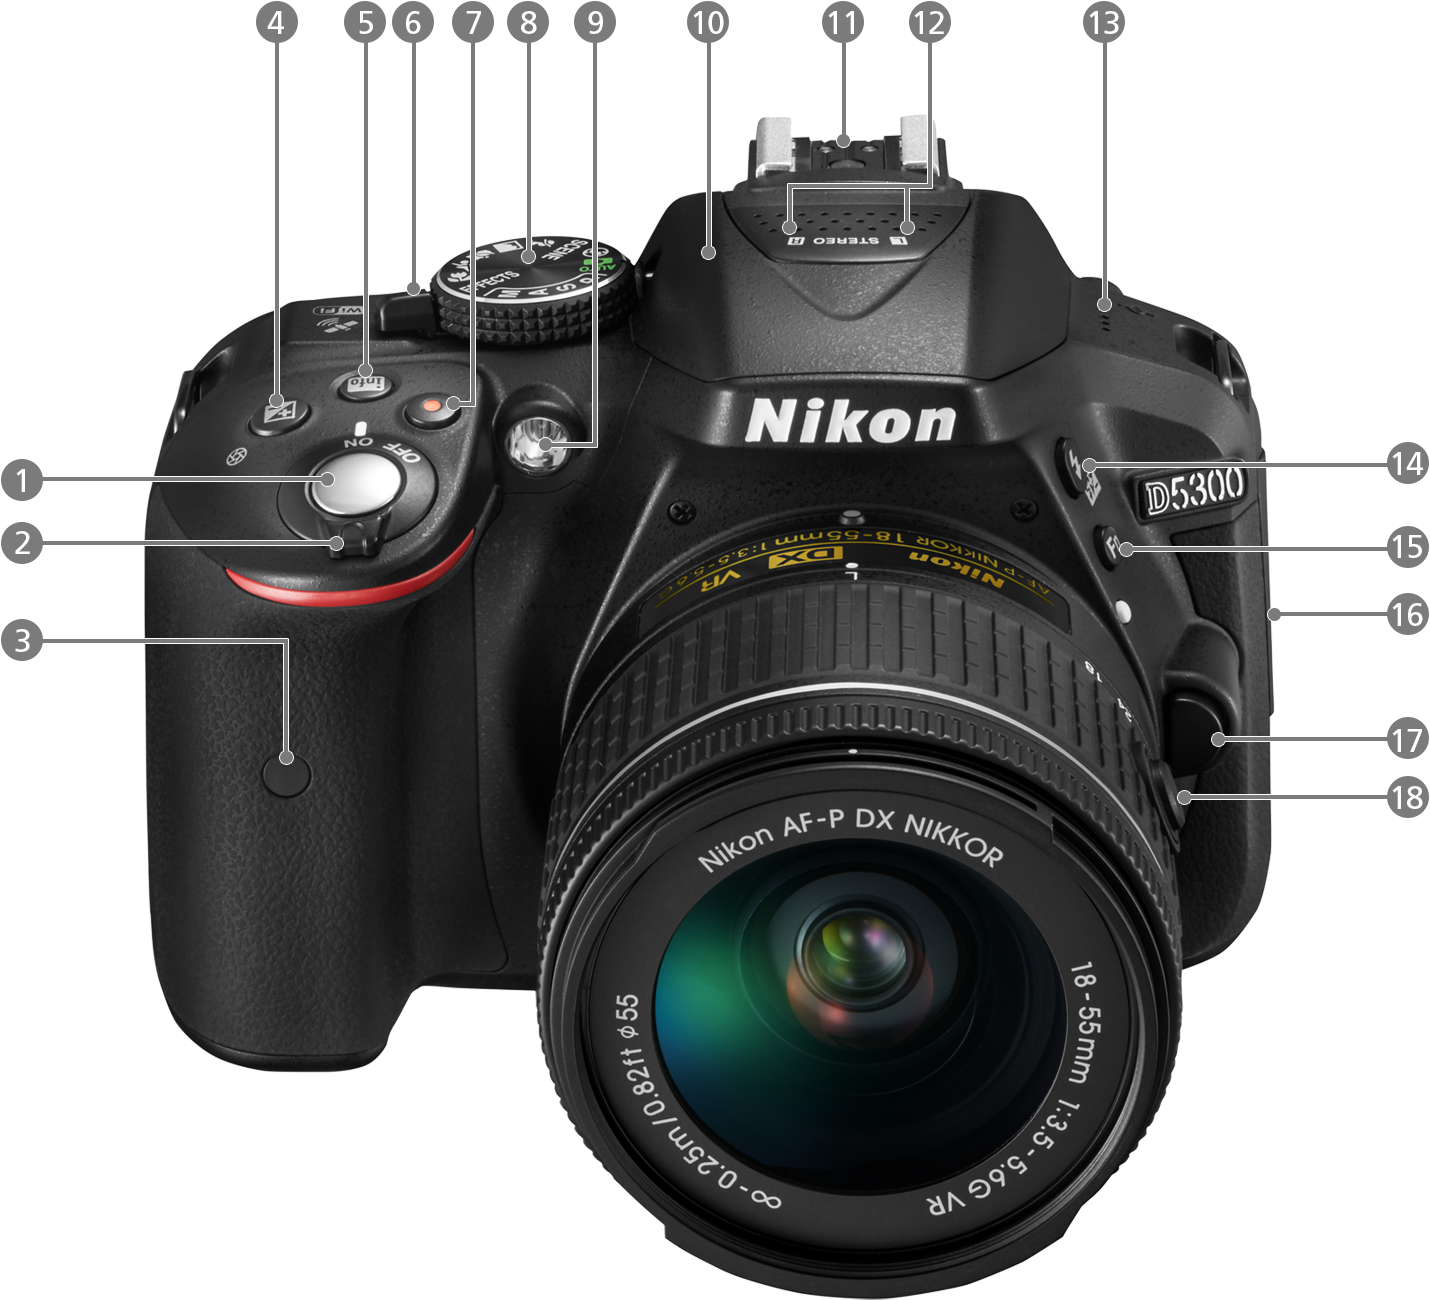 D5300 - 各部名称 | 一眼レフカメラ | ニコンイメージング